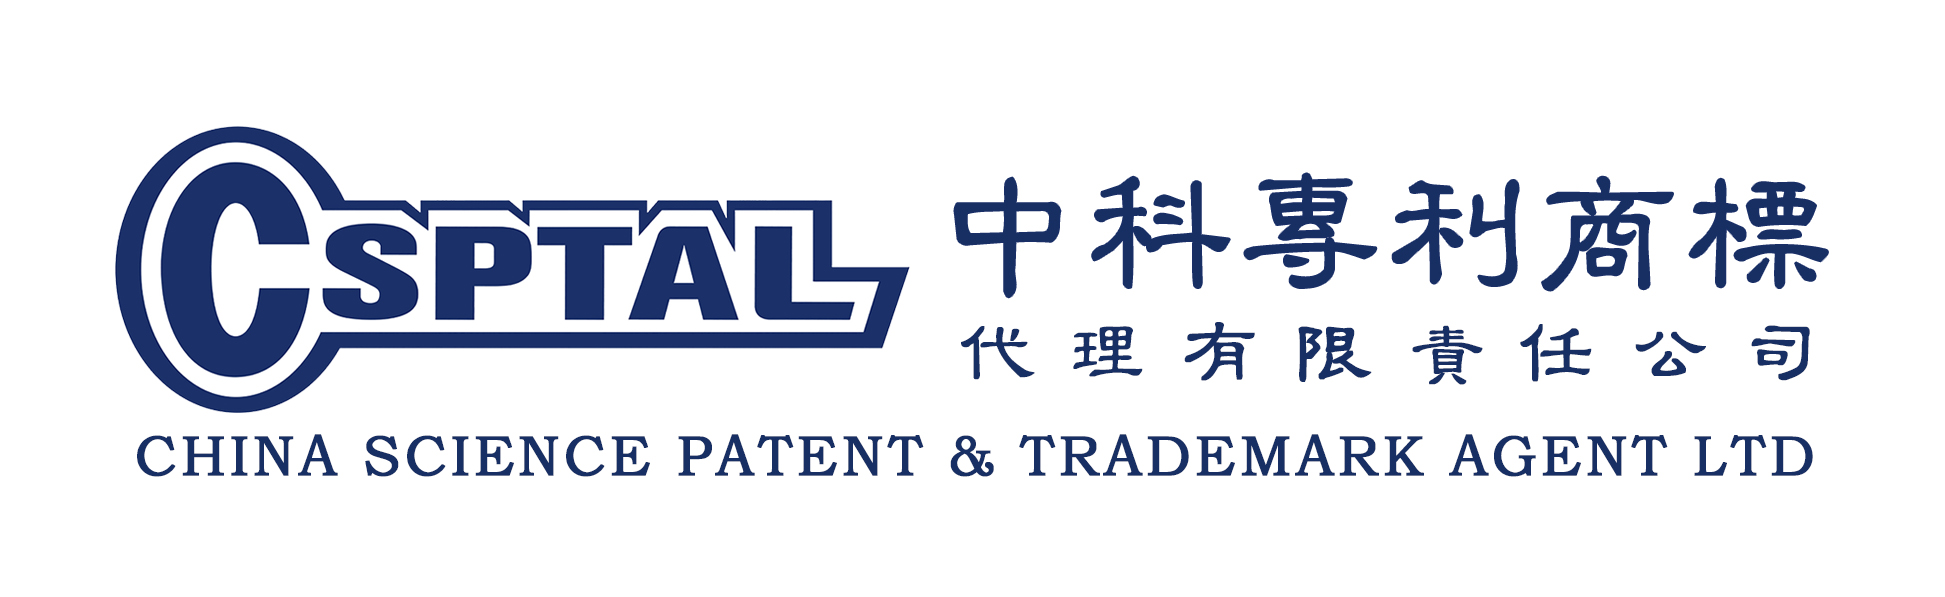 中科专利商标代理有限责任公司